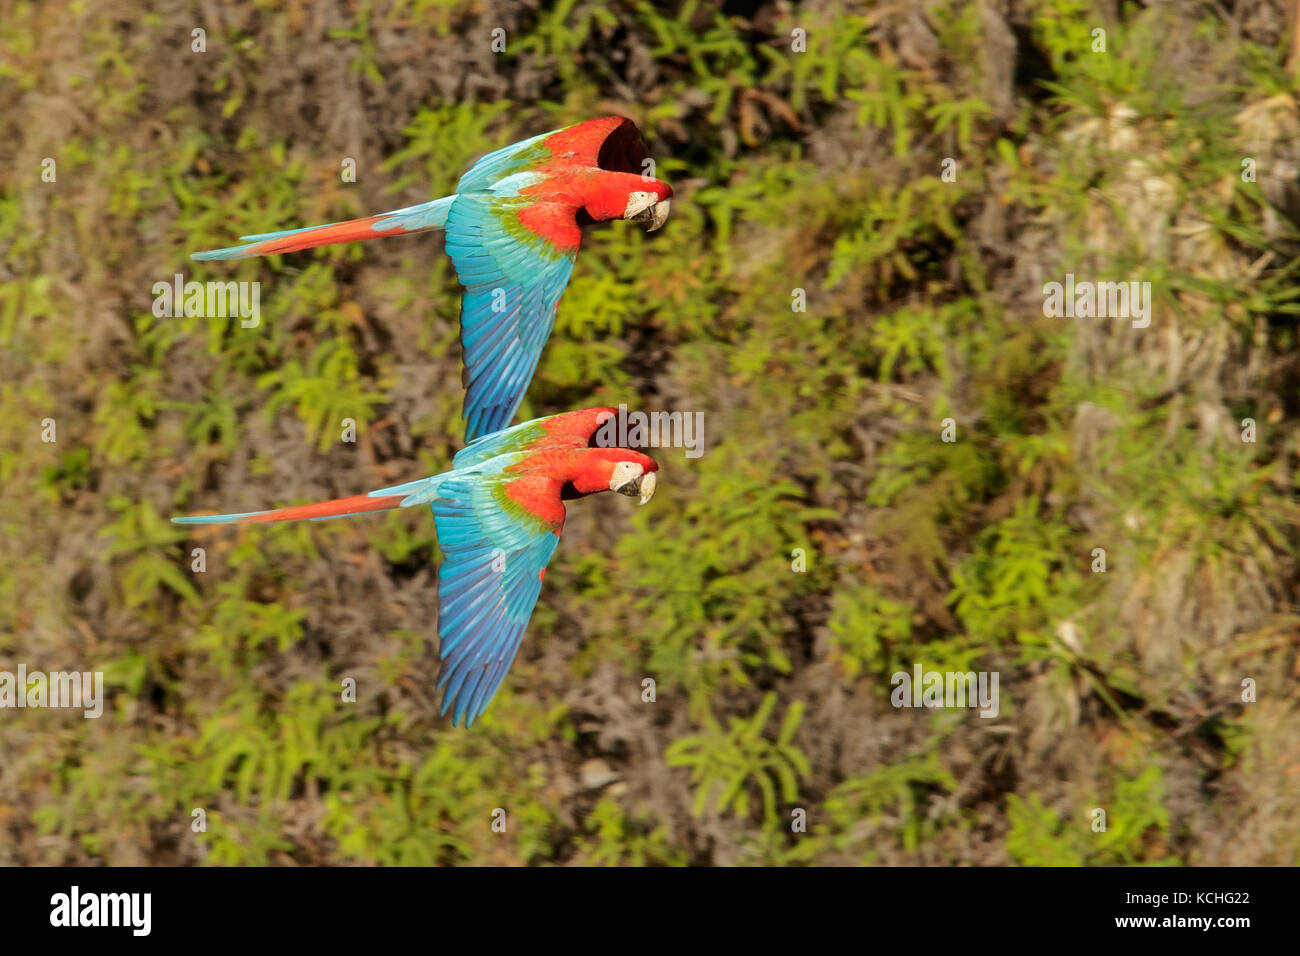 Le rouge et vert Macaw (Ara chloroptera) voler dans la région du Pantanal brésilien. Banque D'Images